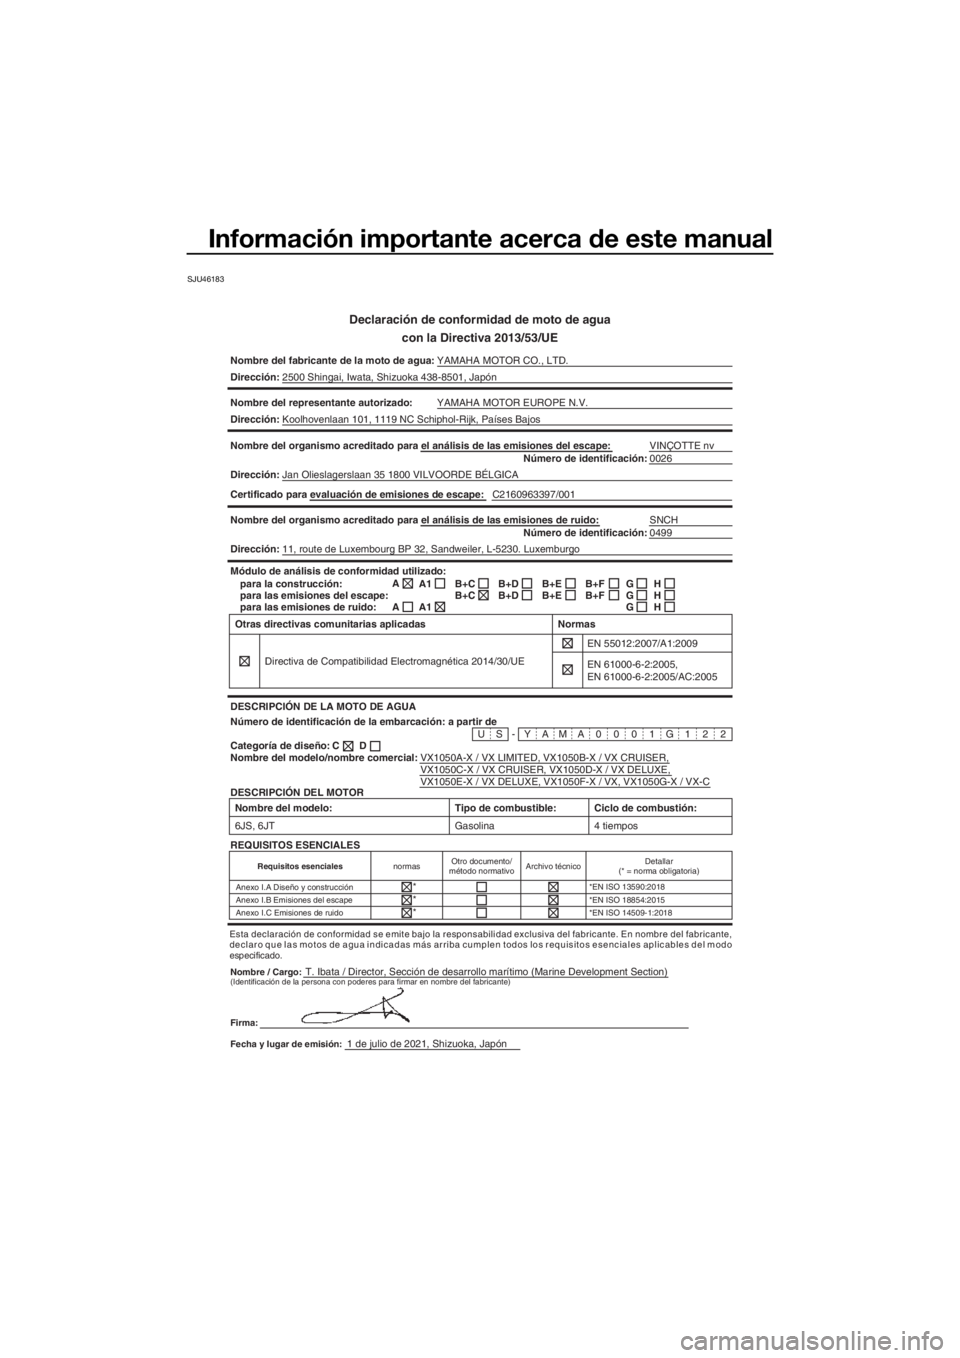 YAMAHA VX 2022  Manuale de Empleo (in Spanish) Información importante acerca de este manual
SJU46183
Declaración de conformidad de moto de aguacon la Directiva 2013/53/UE
Nombre del fabricante de la moto de agua: YAMAHA MOTOR CO., LTD.
Direcció